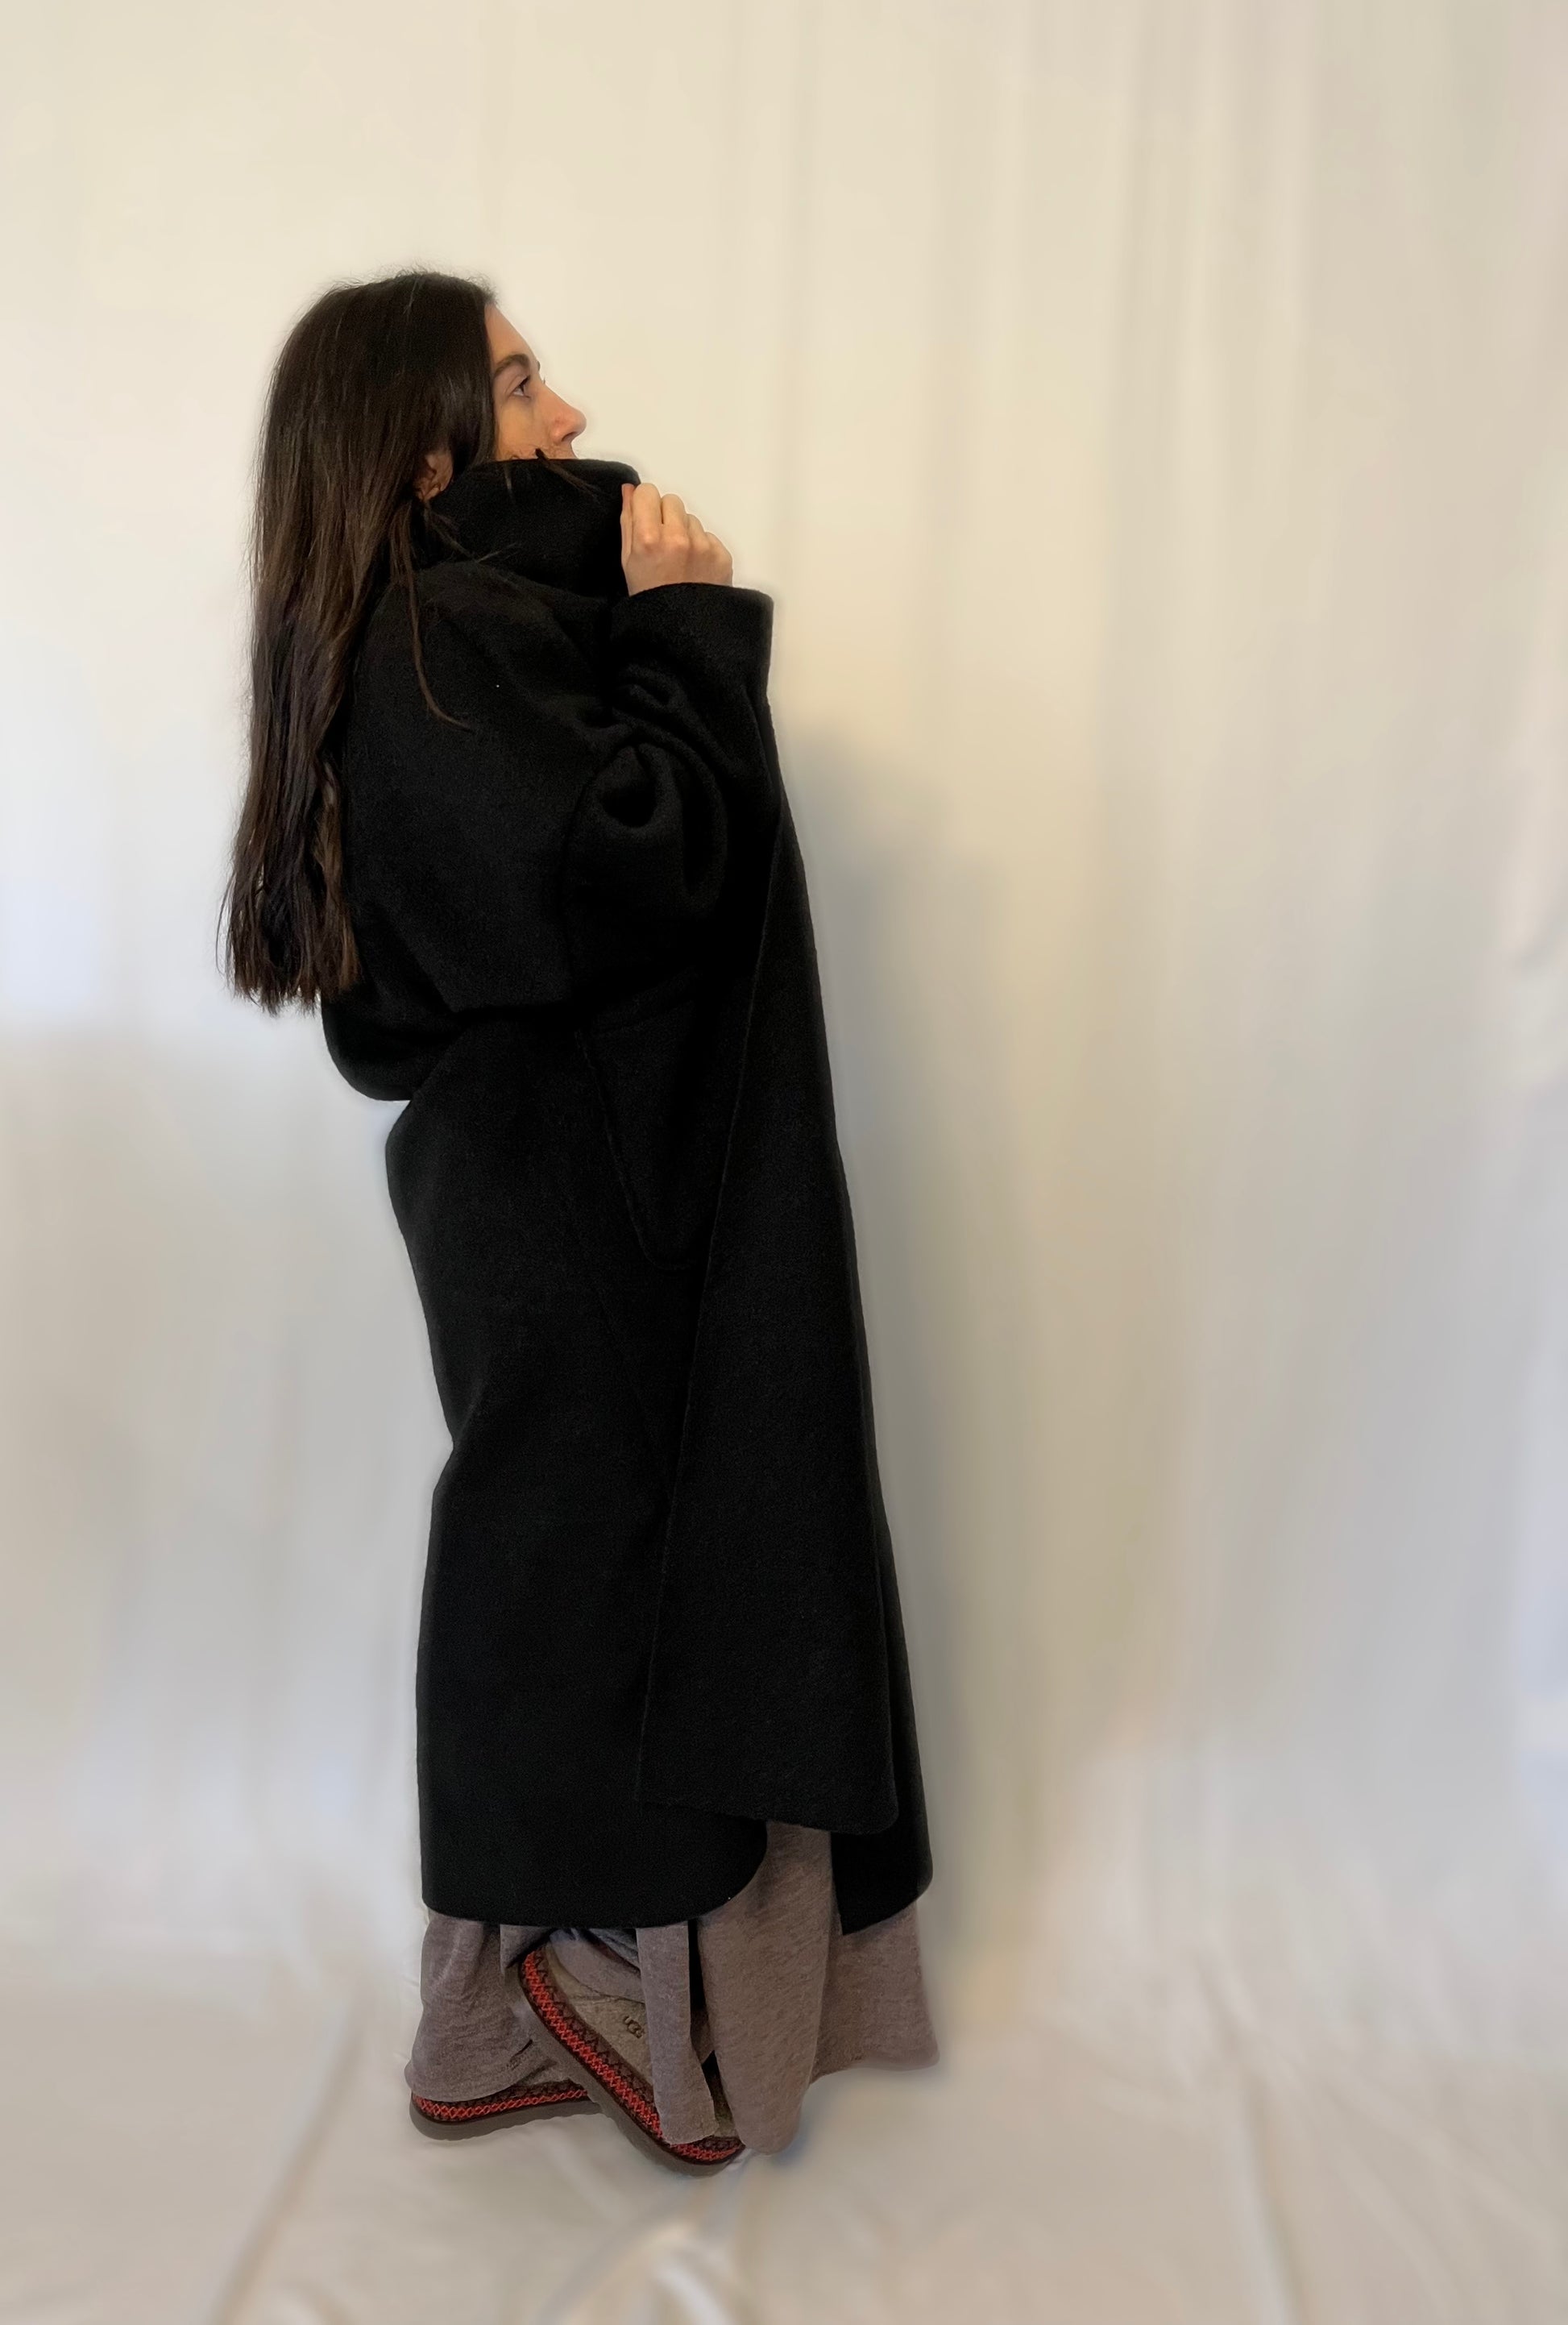 Manteau gilet noir – Kaqi Collection